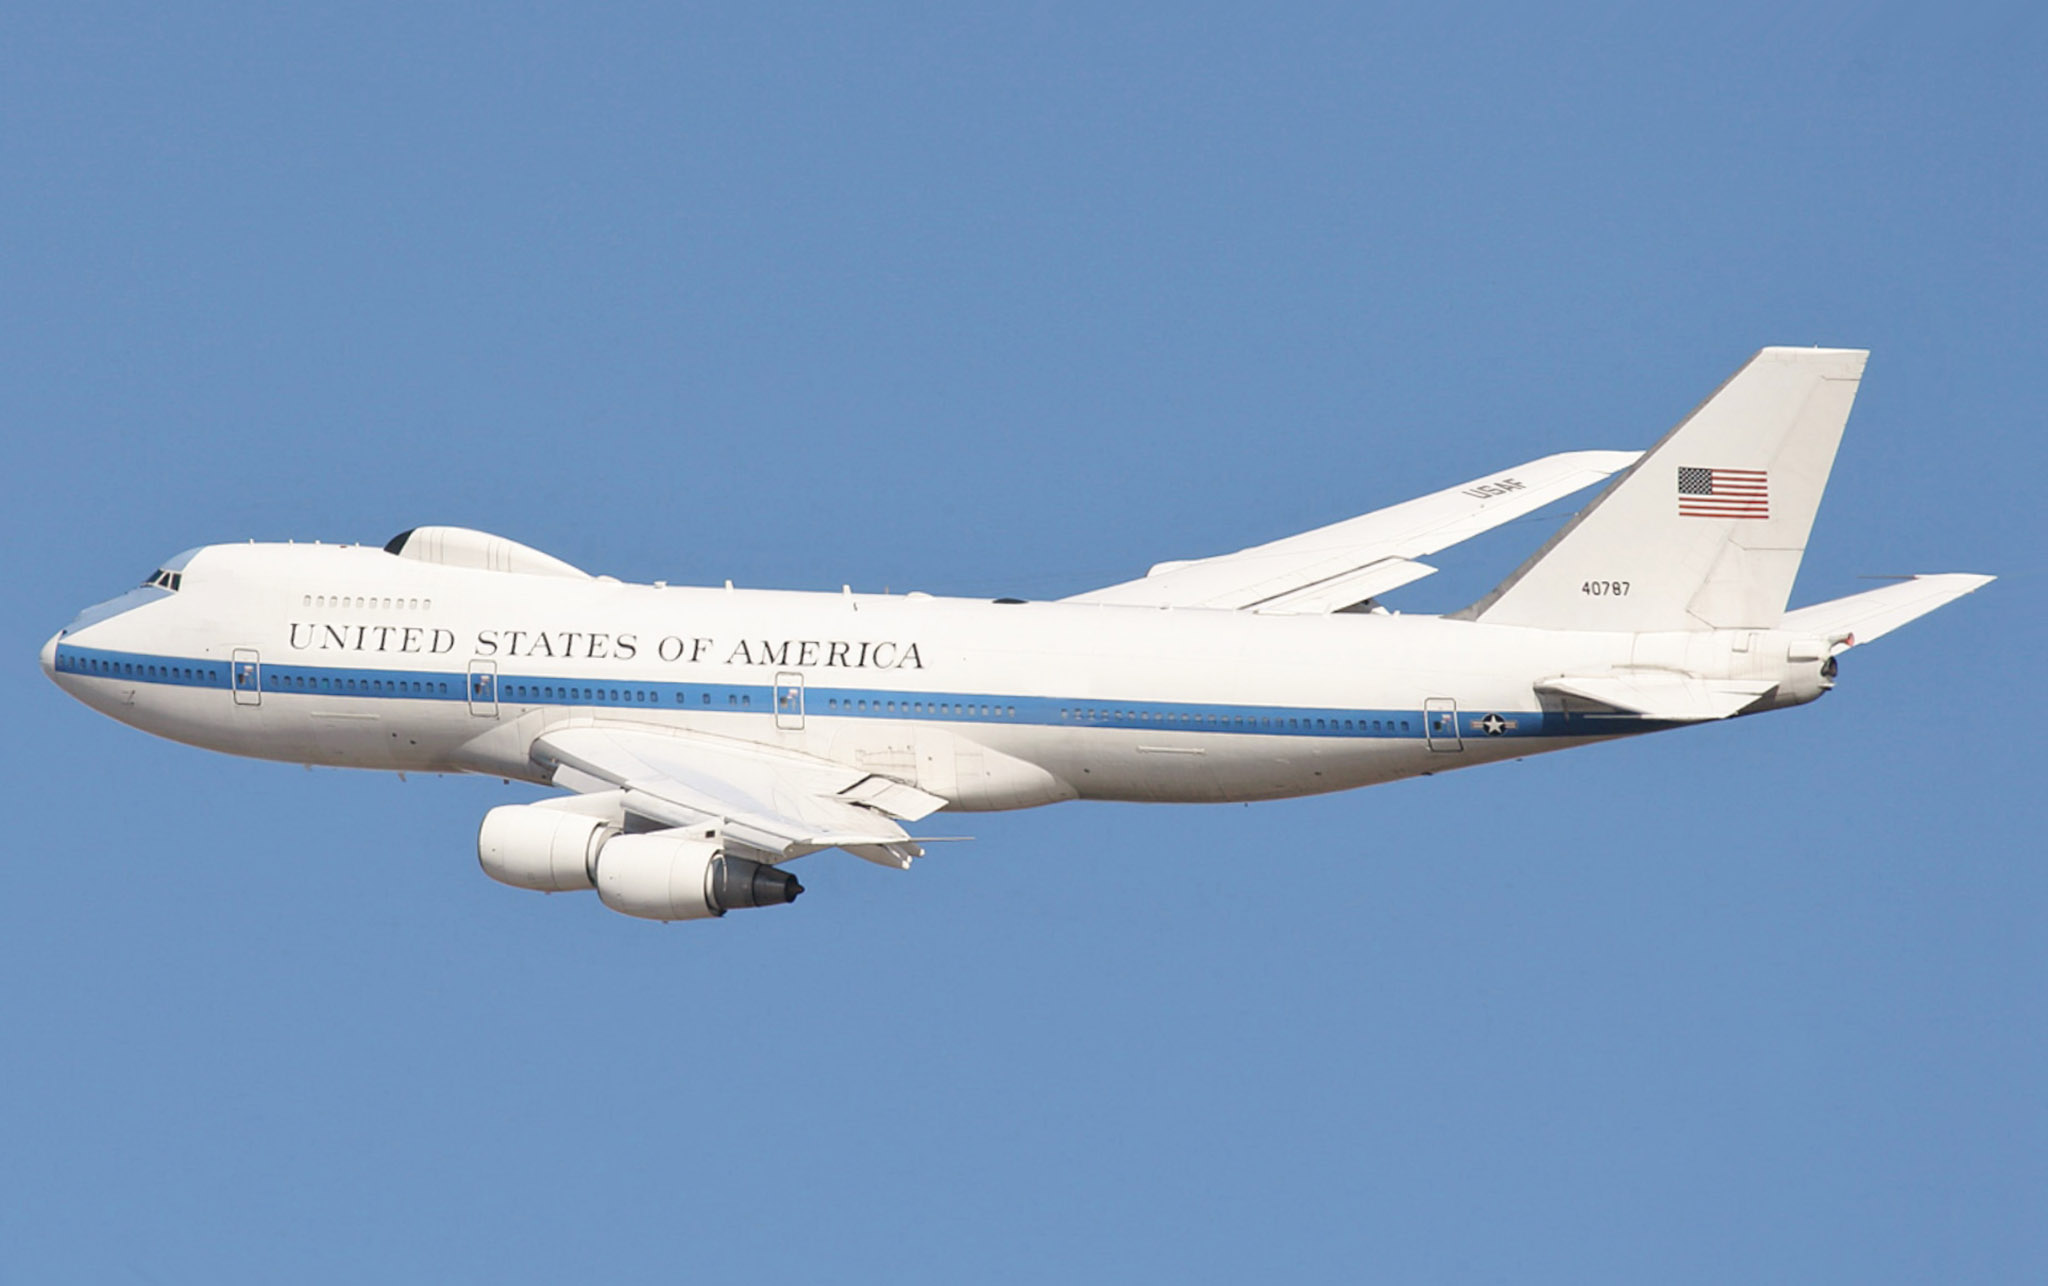 Boeing 747 Air Force One.jpg